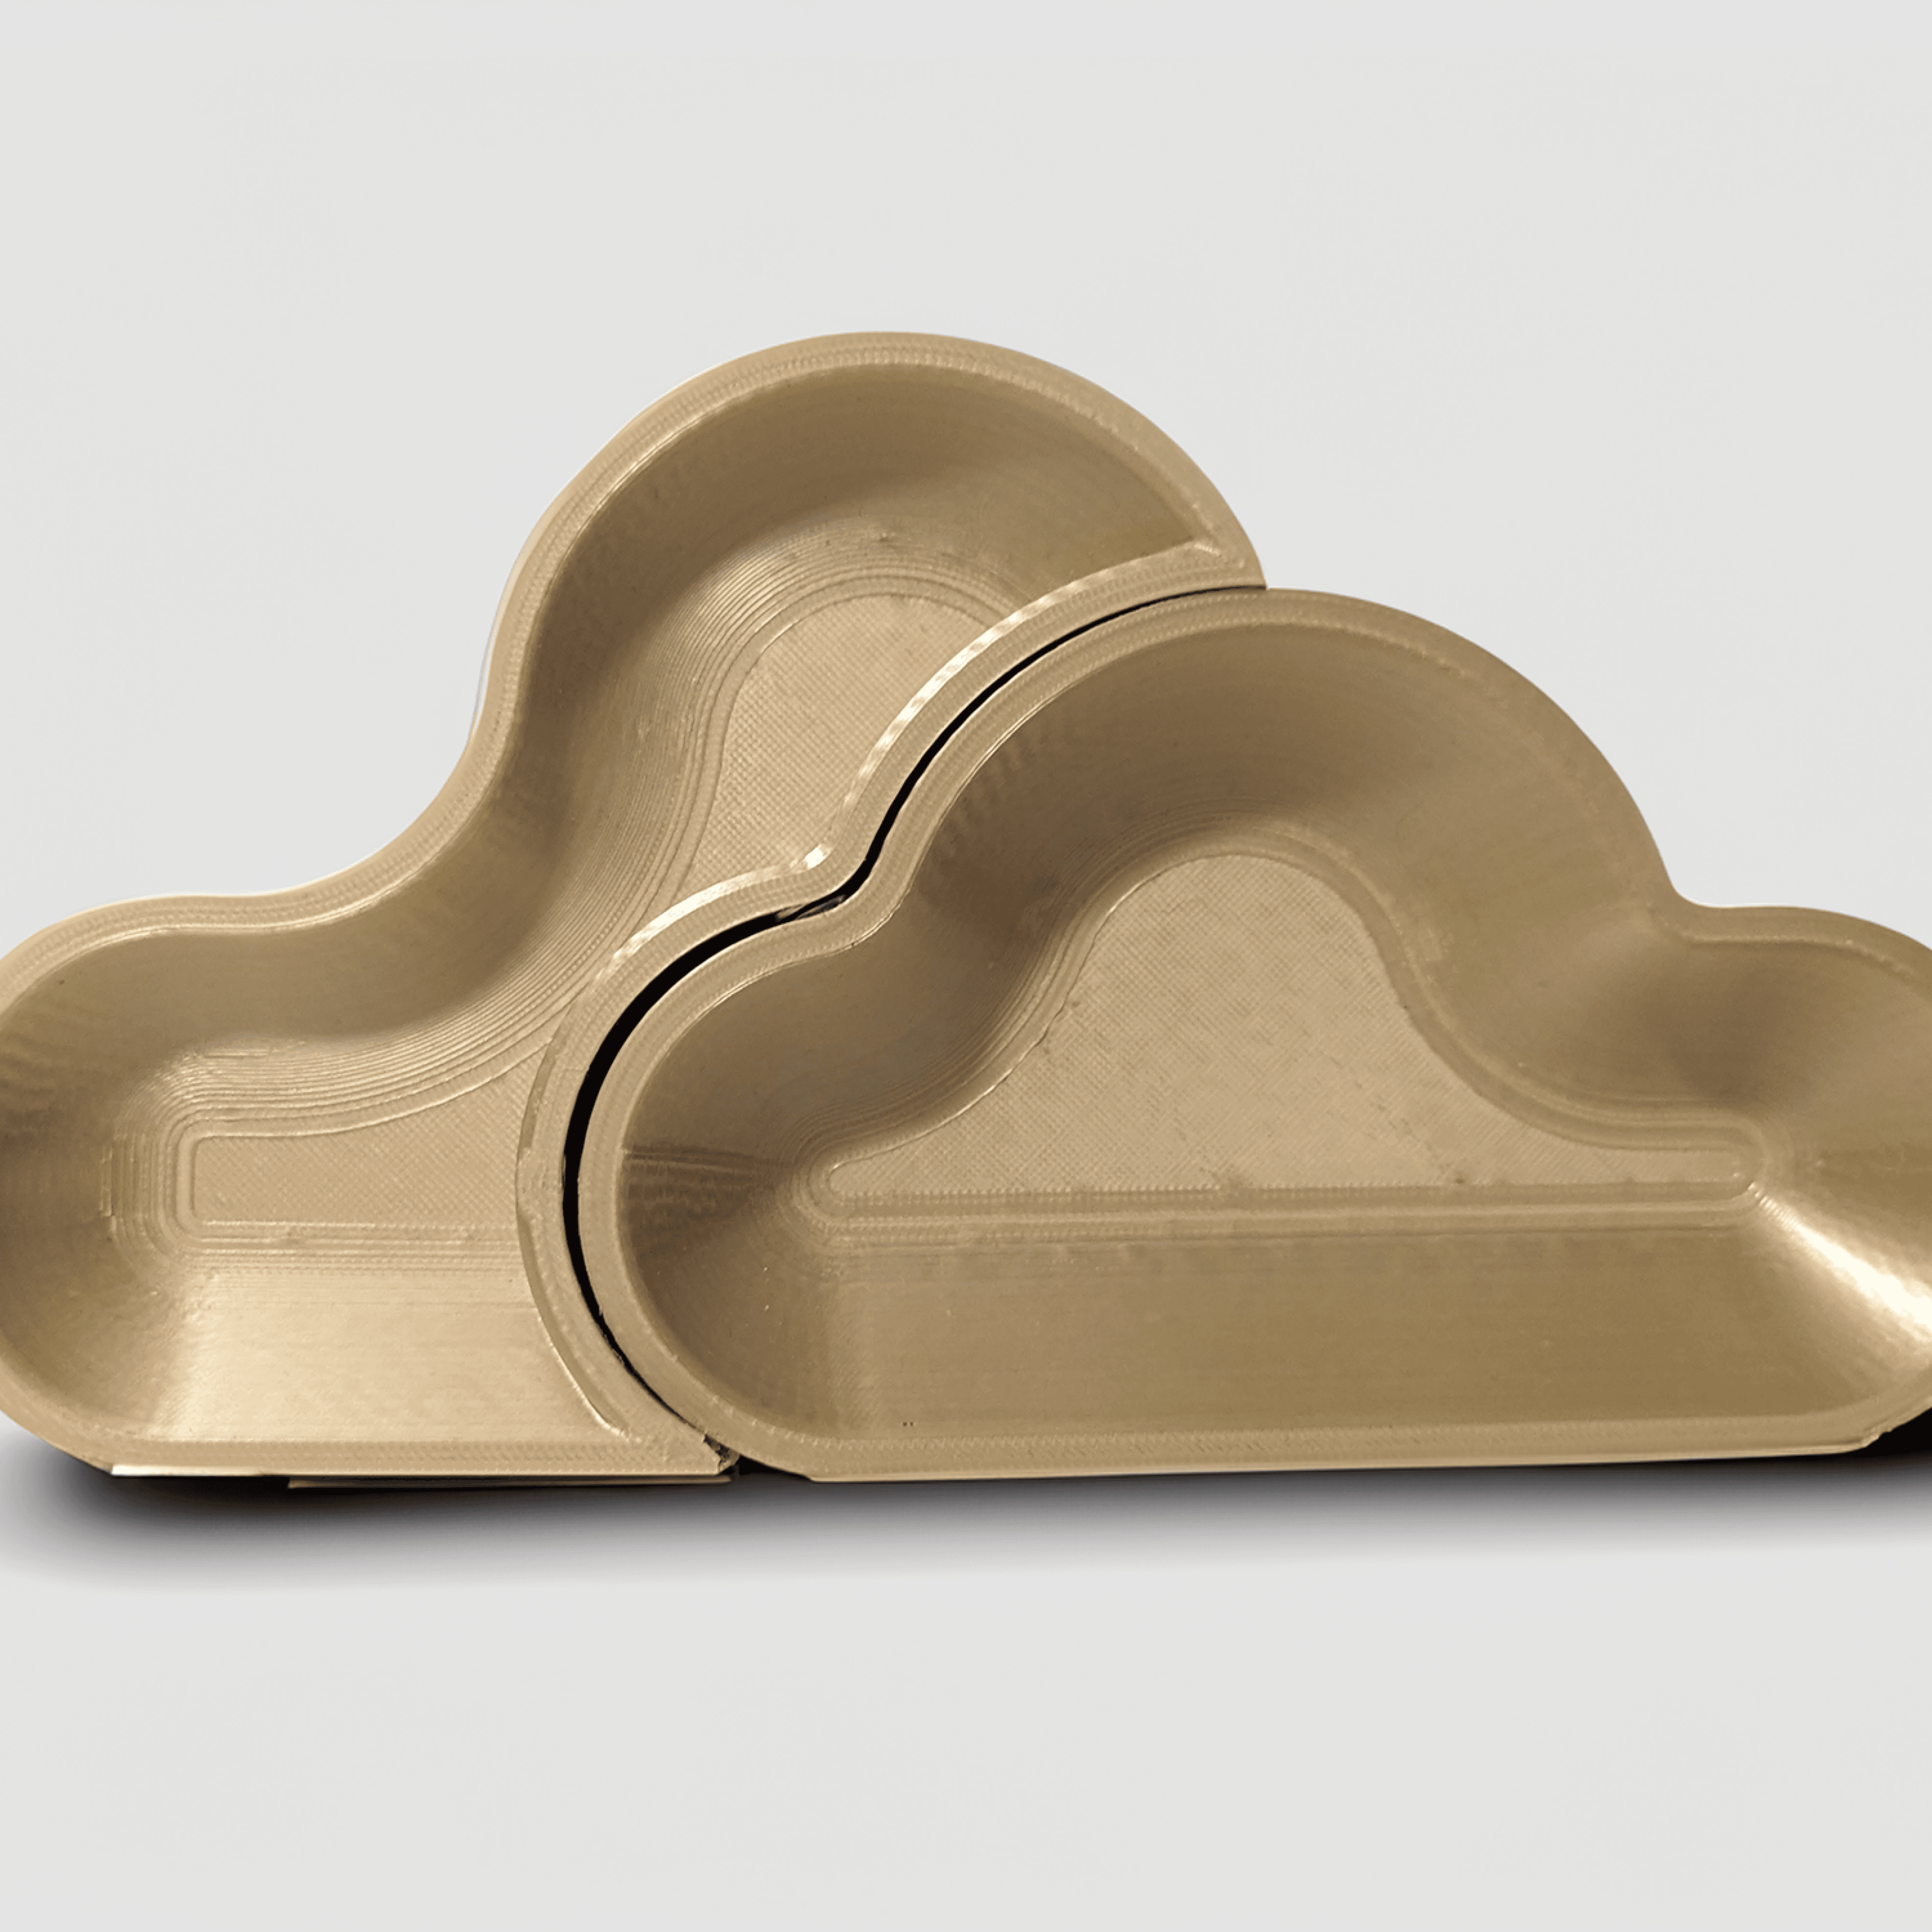 Jewelry Tray - Cloud  3d model